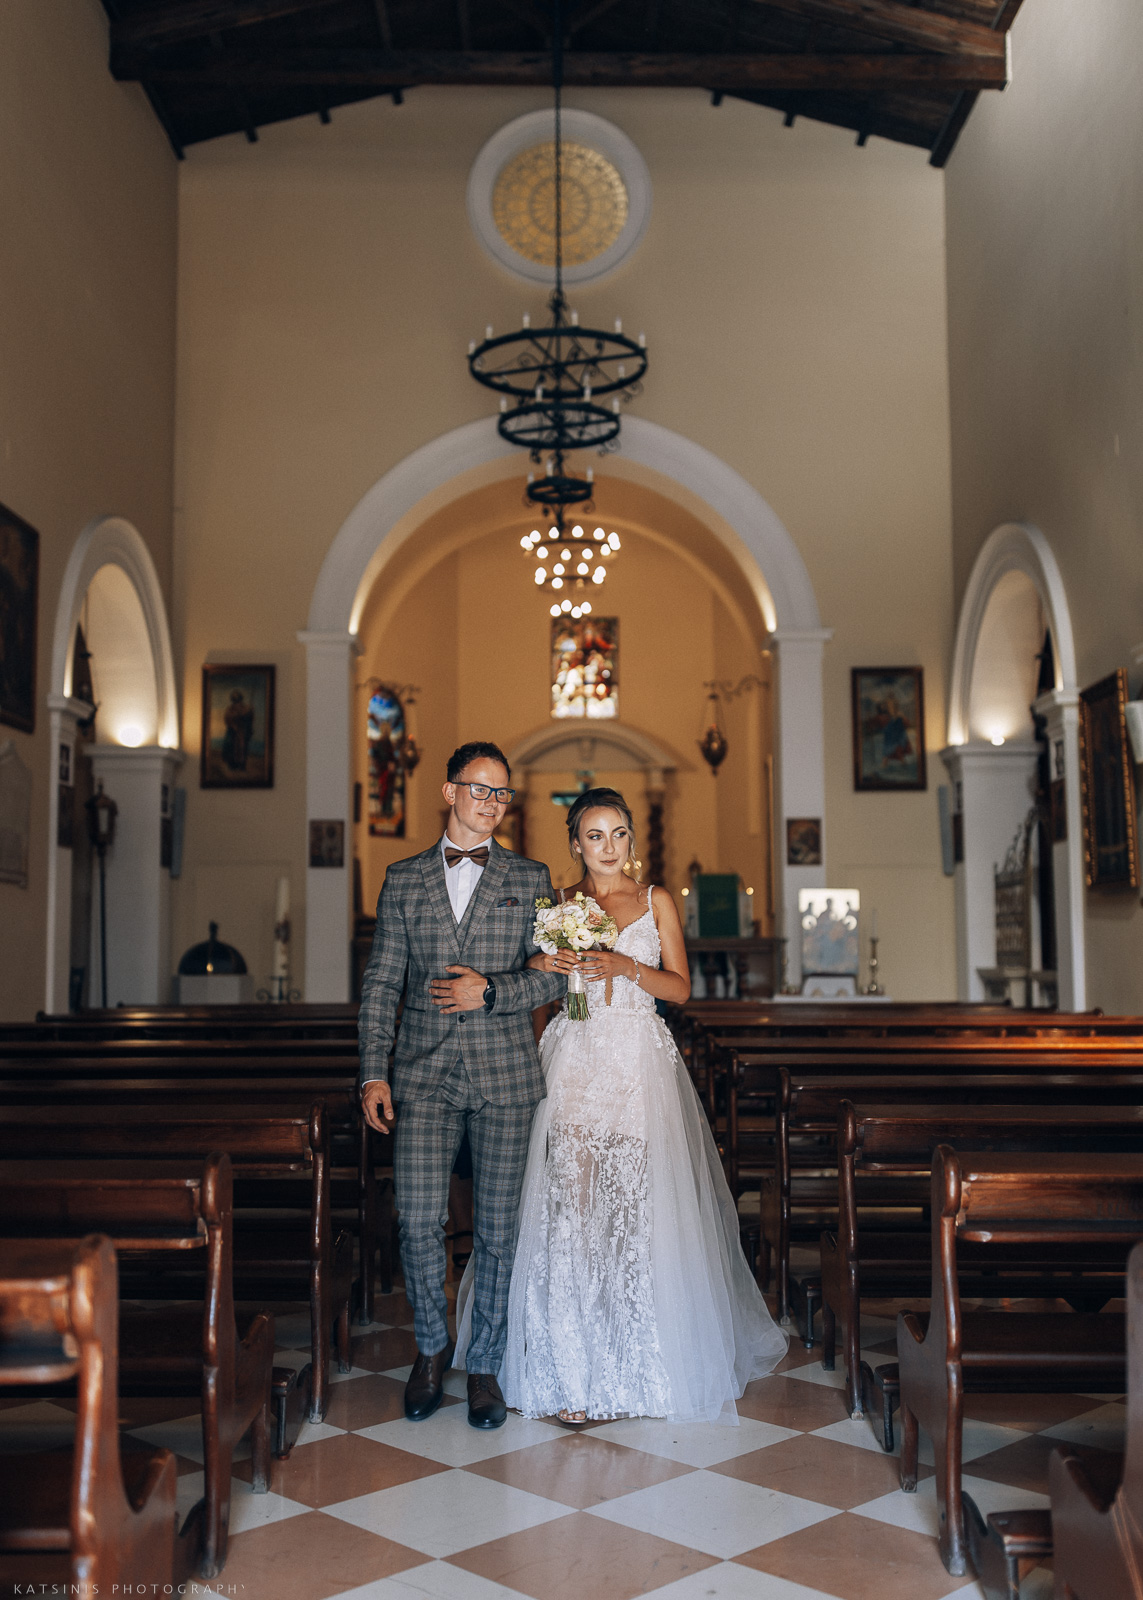 Catholic Wedding Ceremony Photography Pricing